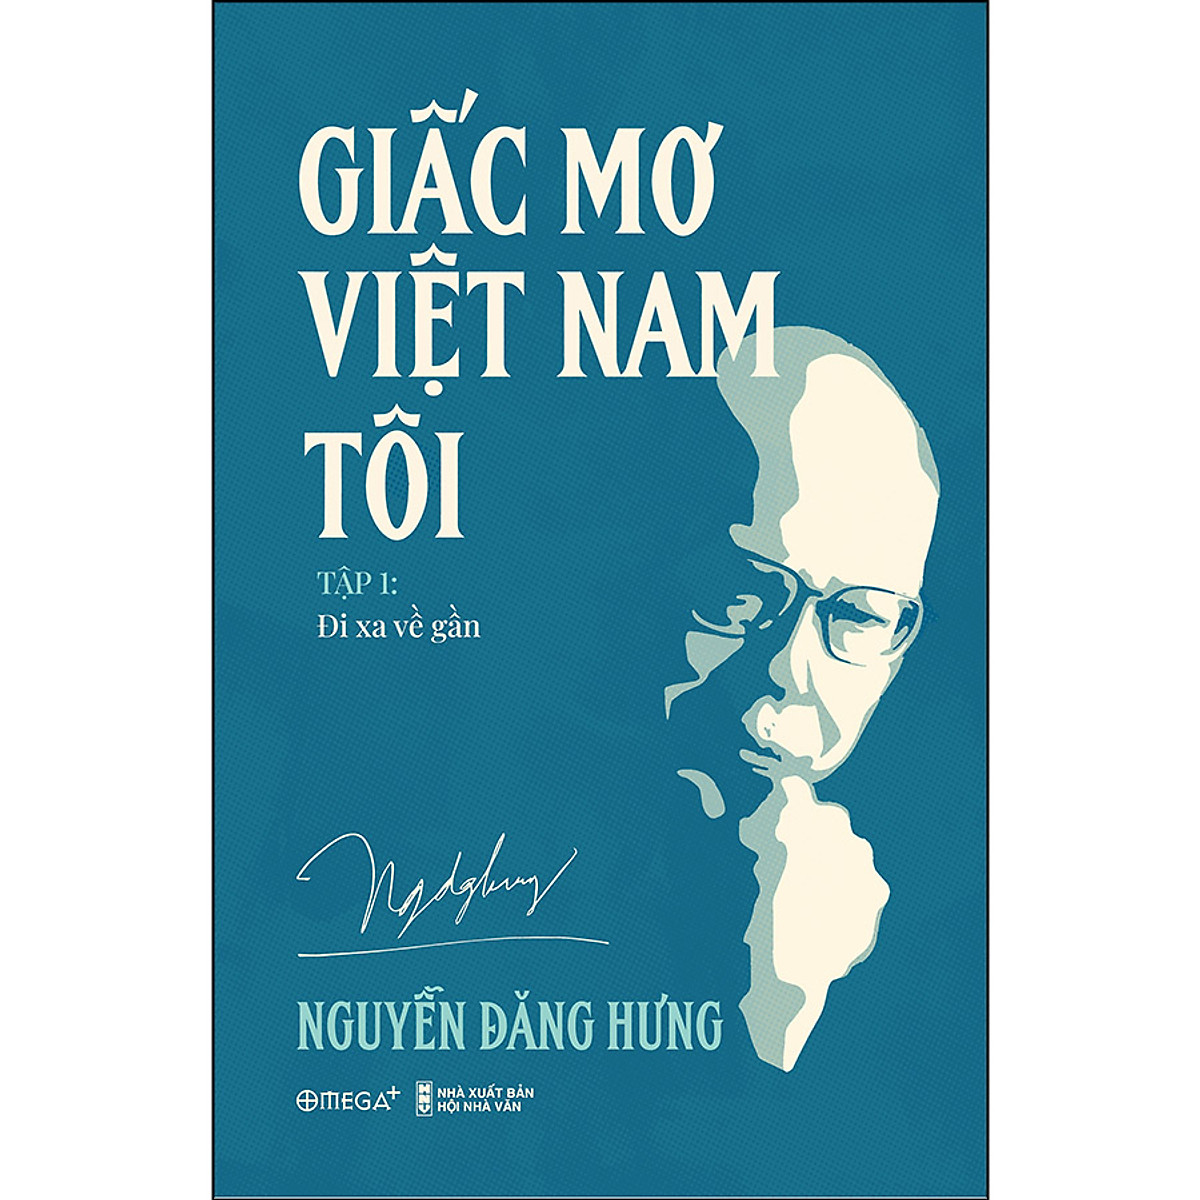 Combo: Giấc Mơ Việt Nam tôi (1, 2) - Nguyễn Đăng Hưng